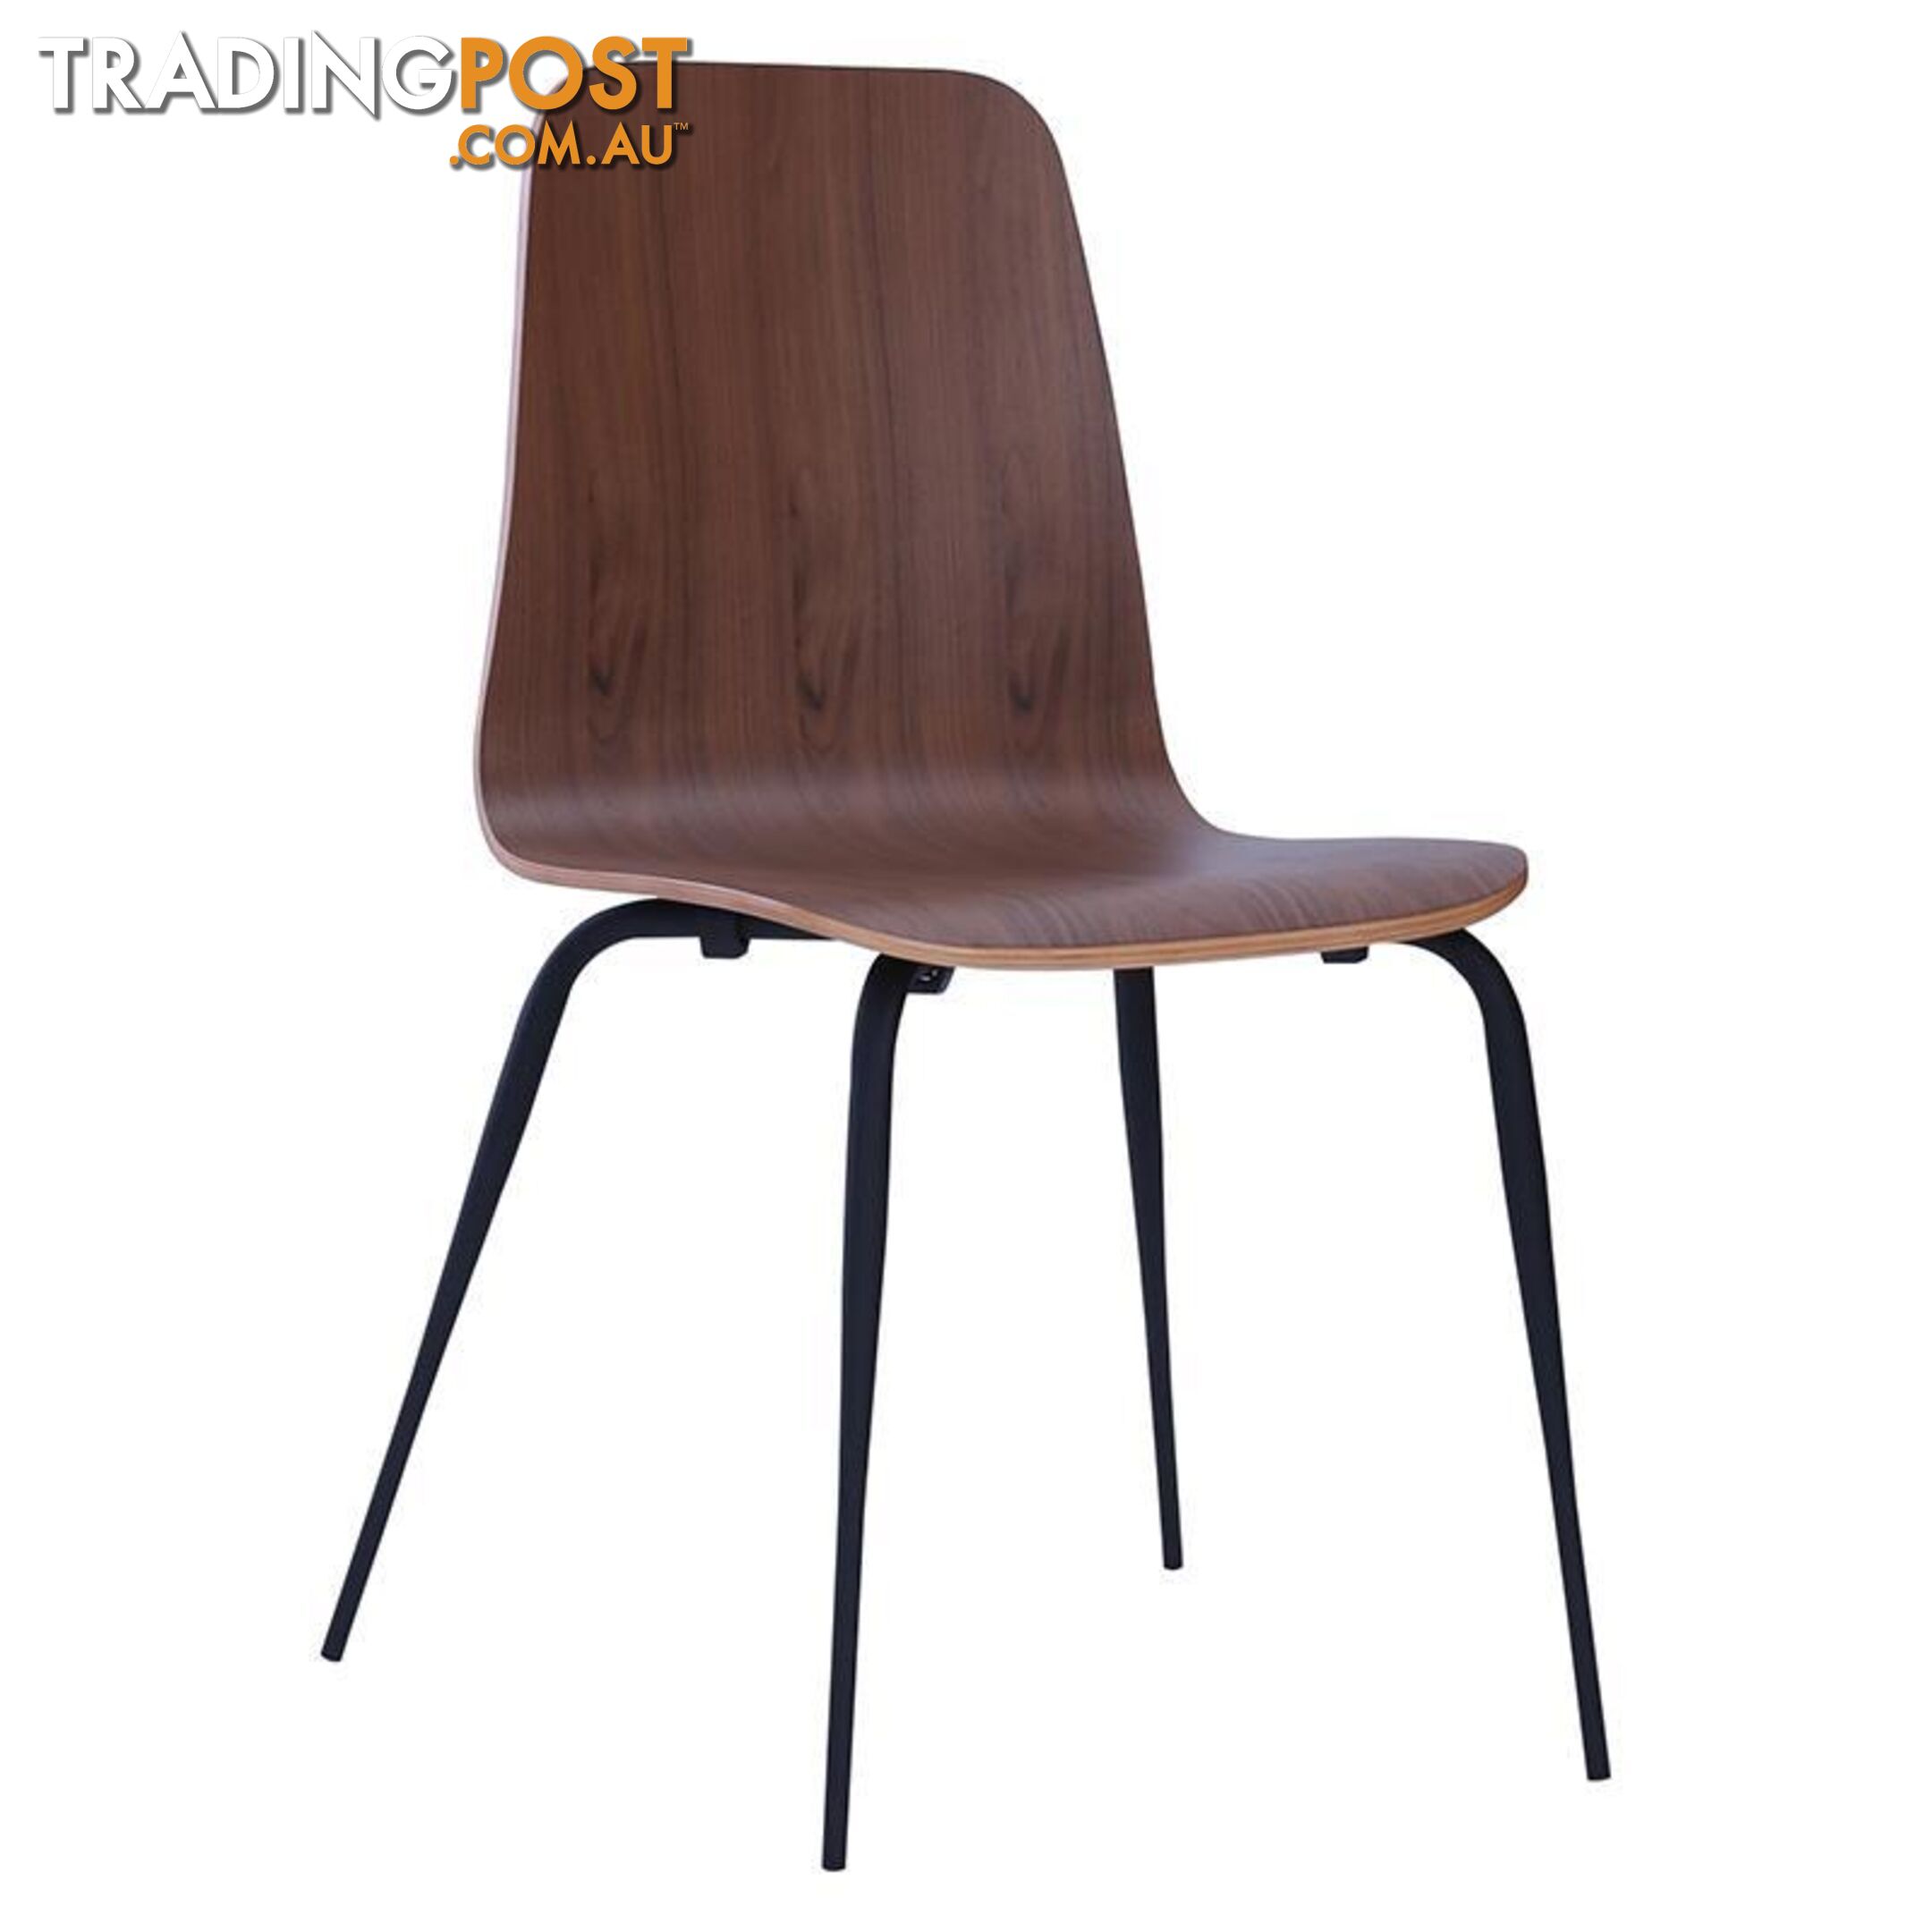 MEIKO Dining Chair - Walnut - 241106 - 9334719008196